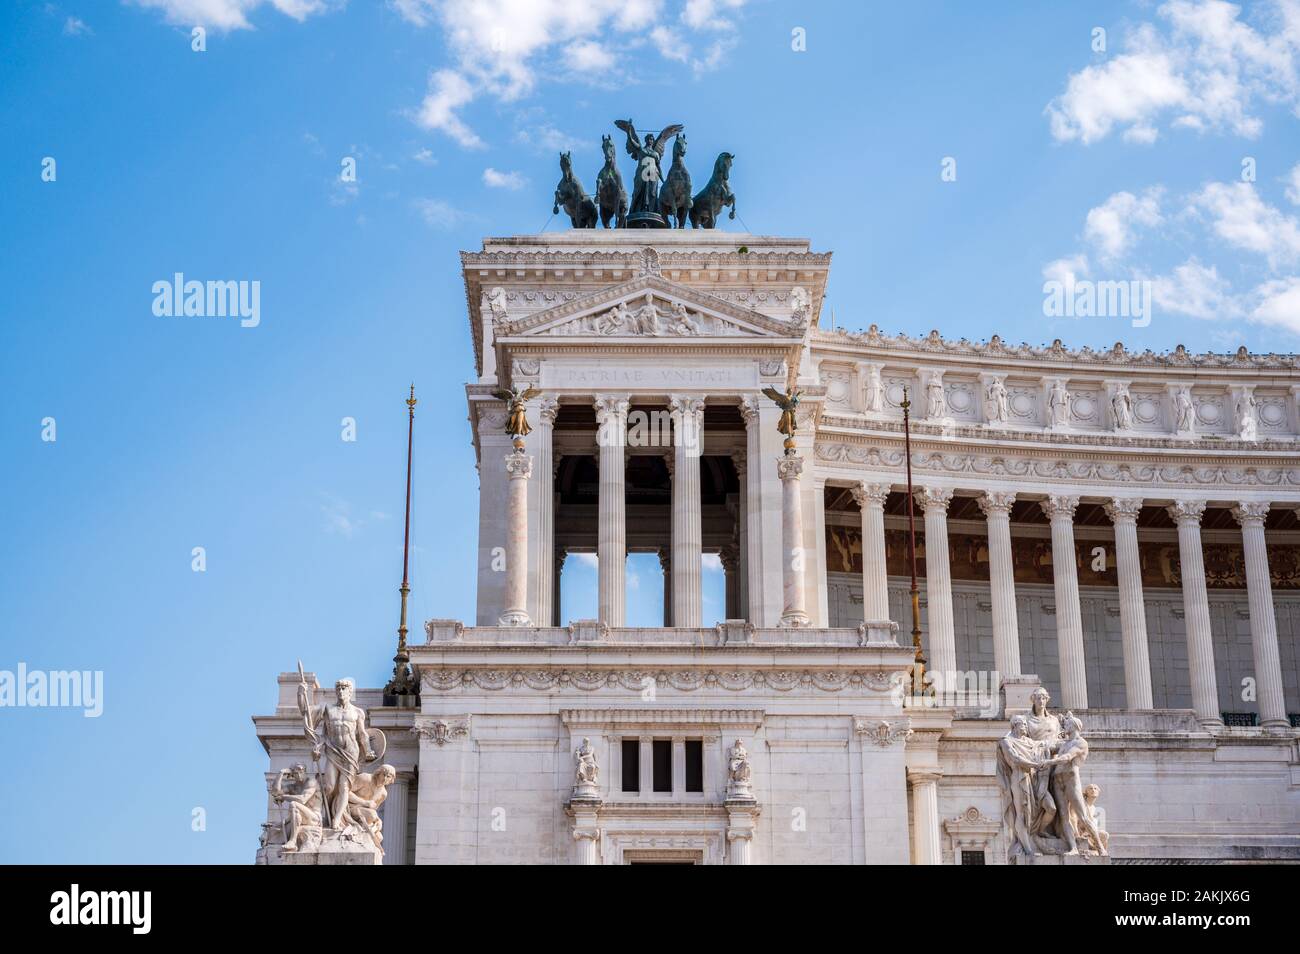 Tumba del Soldado Desconocido (Tomba del Milite Ignoto) un monumento a la guerra en Roma bajo la estatua de la diosa Roma en el Altar della Patria Foto de stock